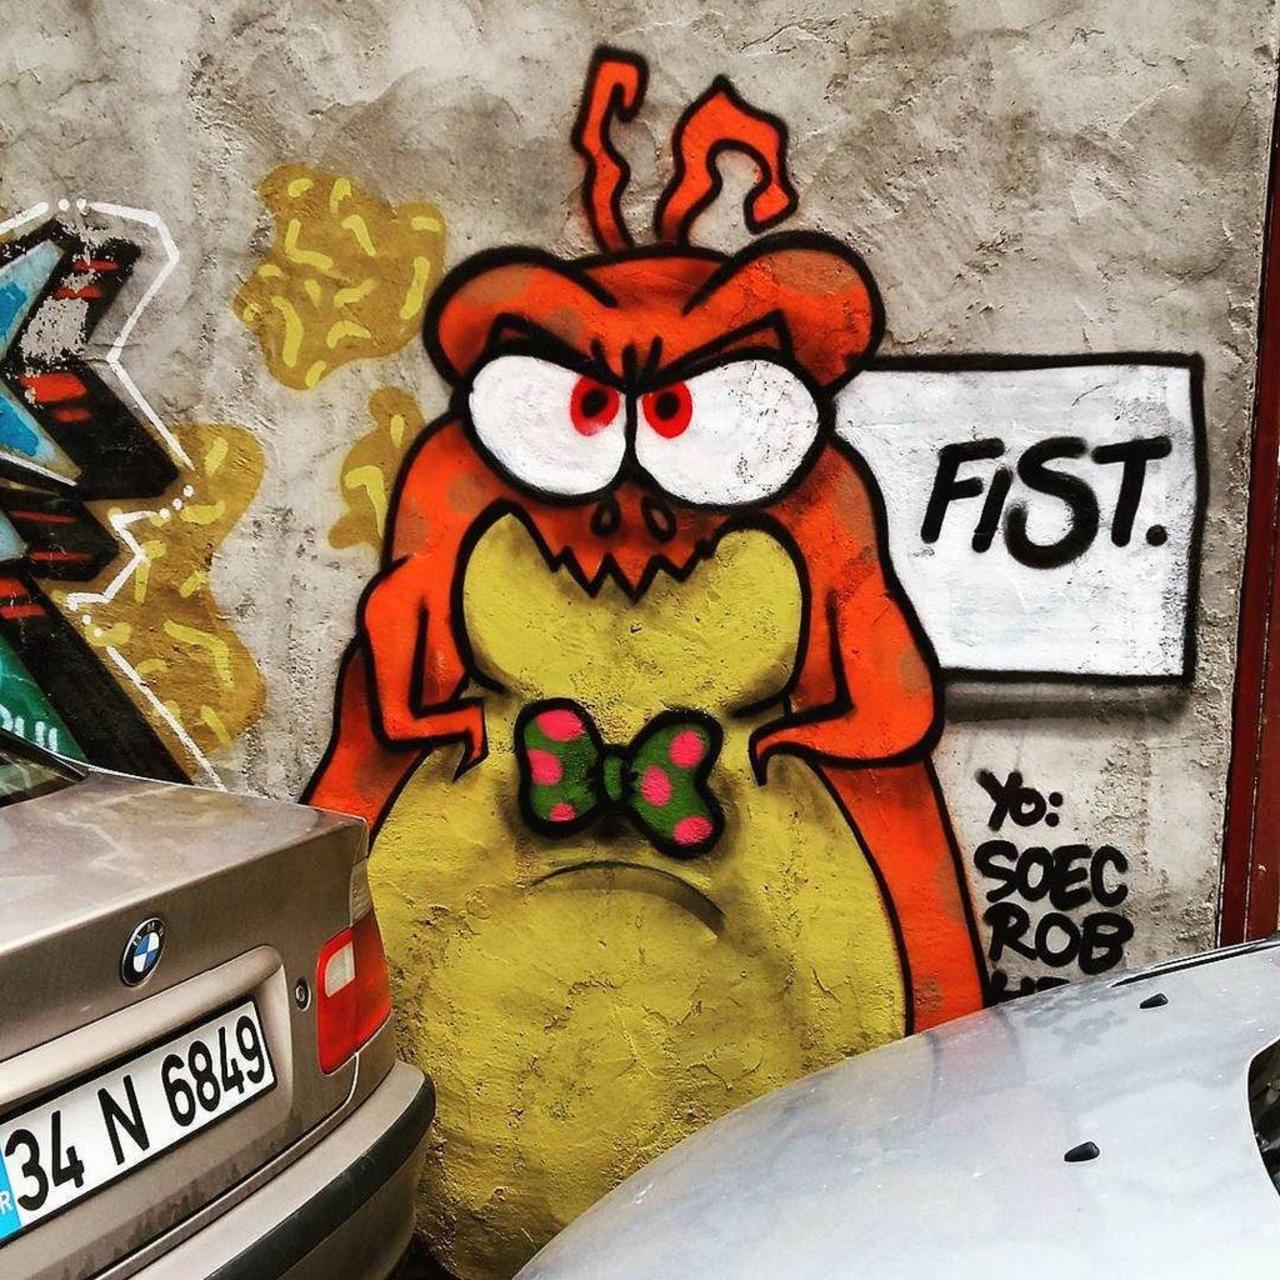 By @wfist @dsb_graff #dsb_graff @rsa_graffiti @streetawesome #streetart #urbanart #graffitiart #graffiti #streetart… http://t.co/VoEOyV1OXp